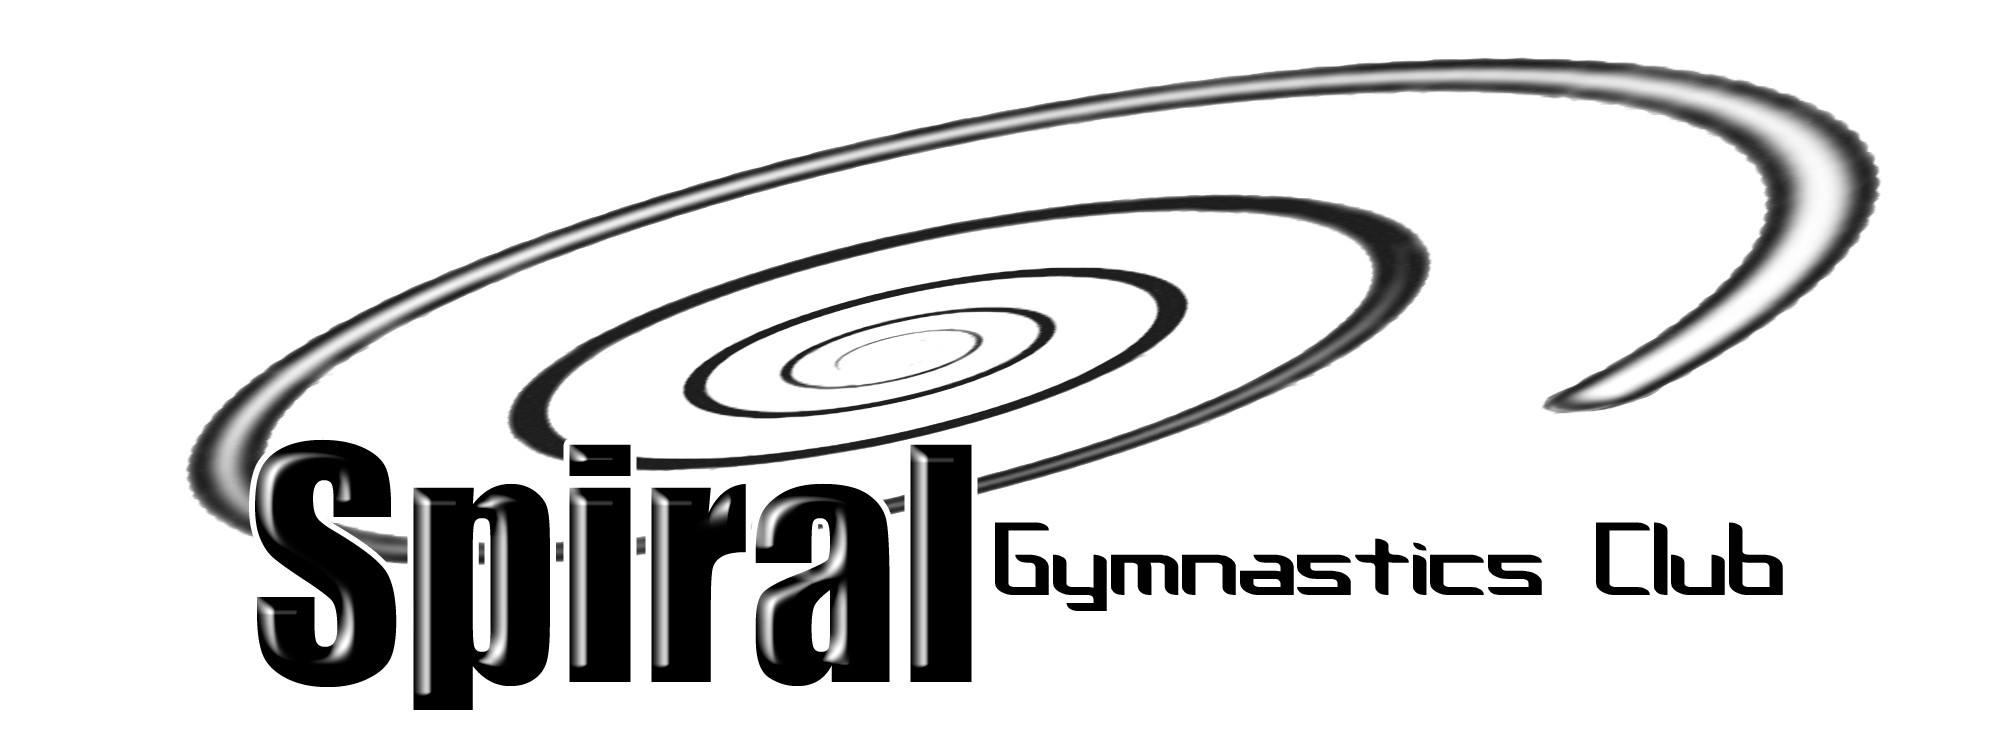 Spiral Gymnastics Club logo